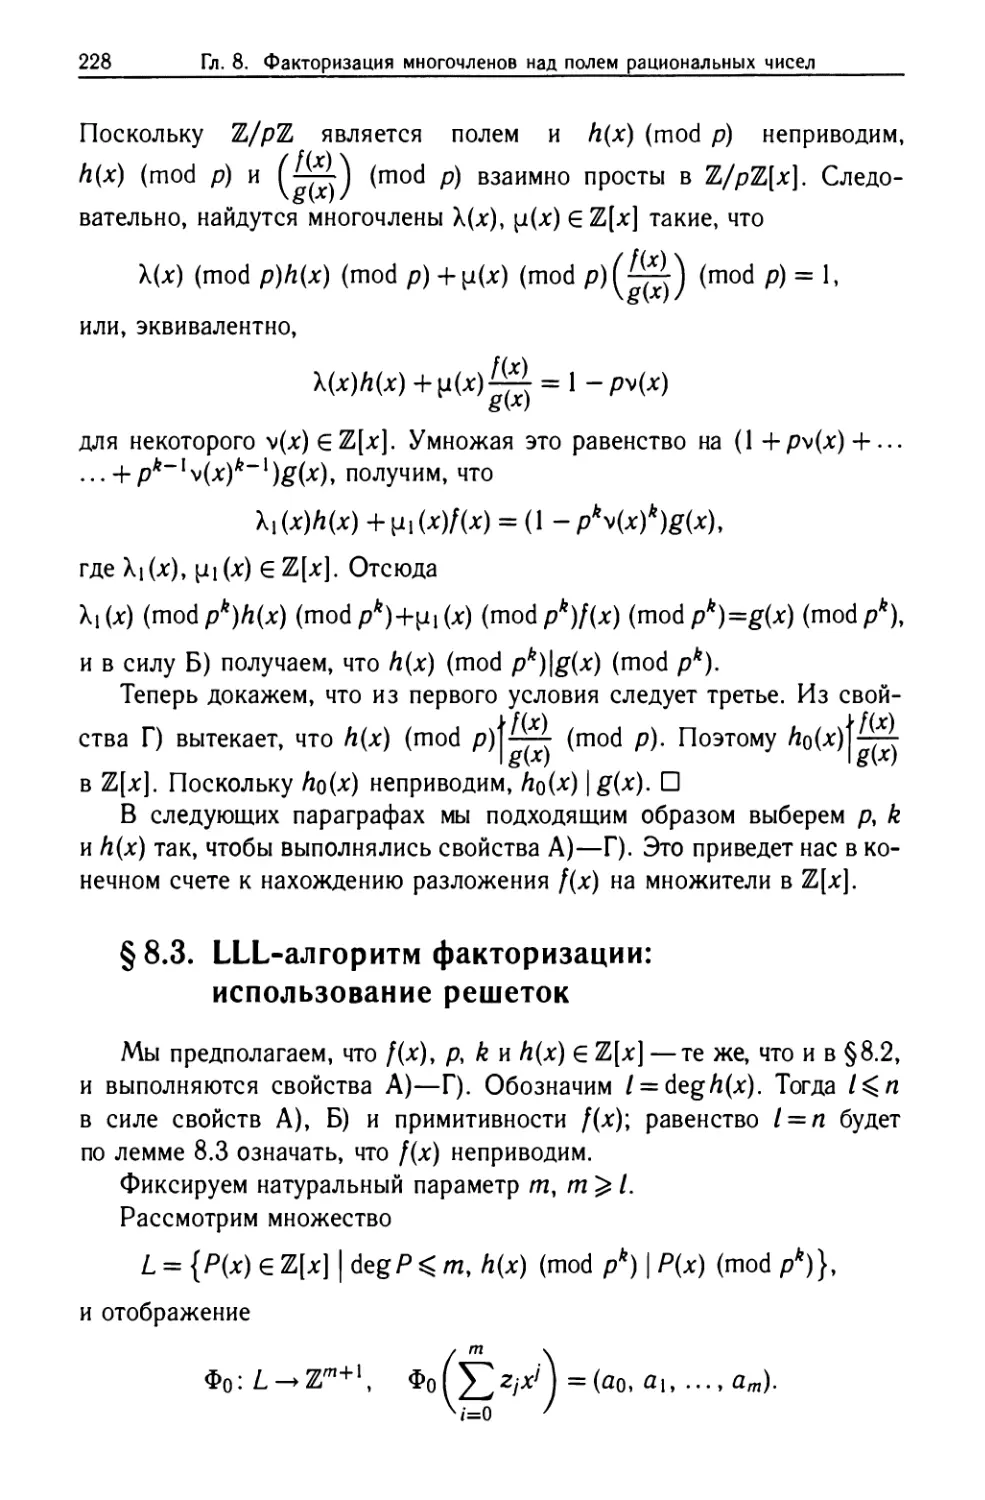 §8.3. LLL-алгоритм факторизации: использование решеток